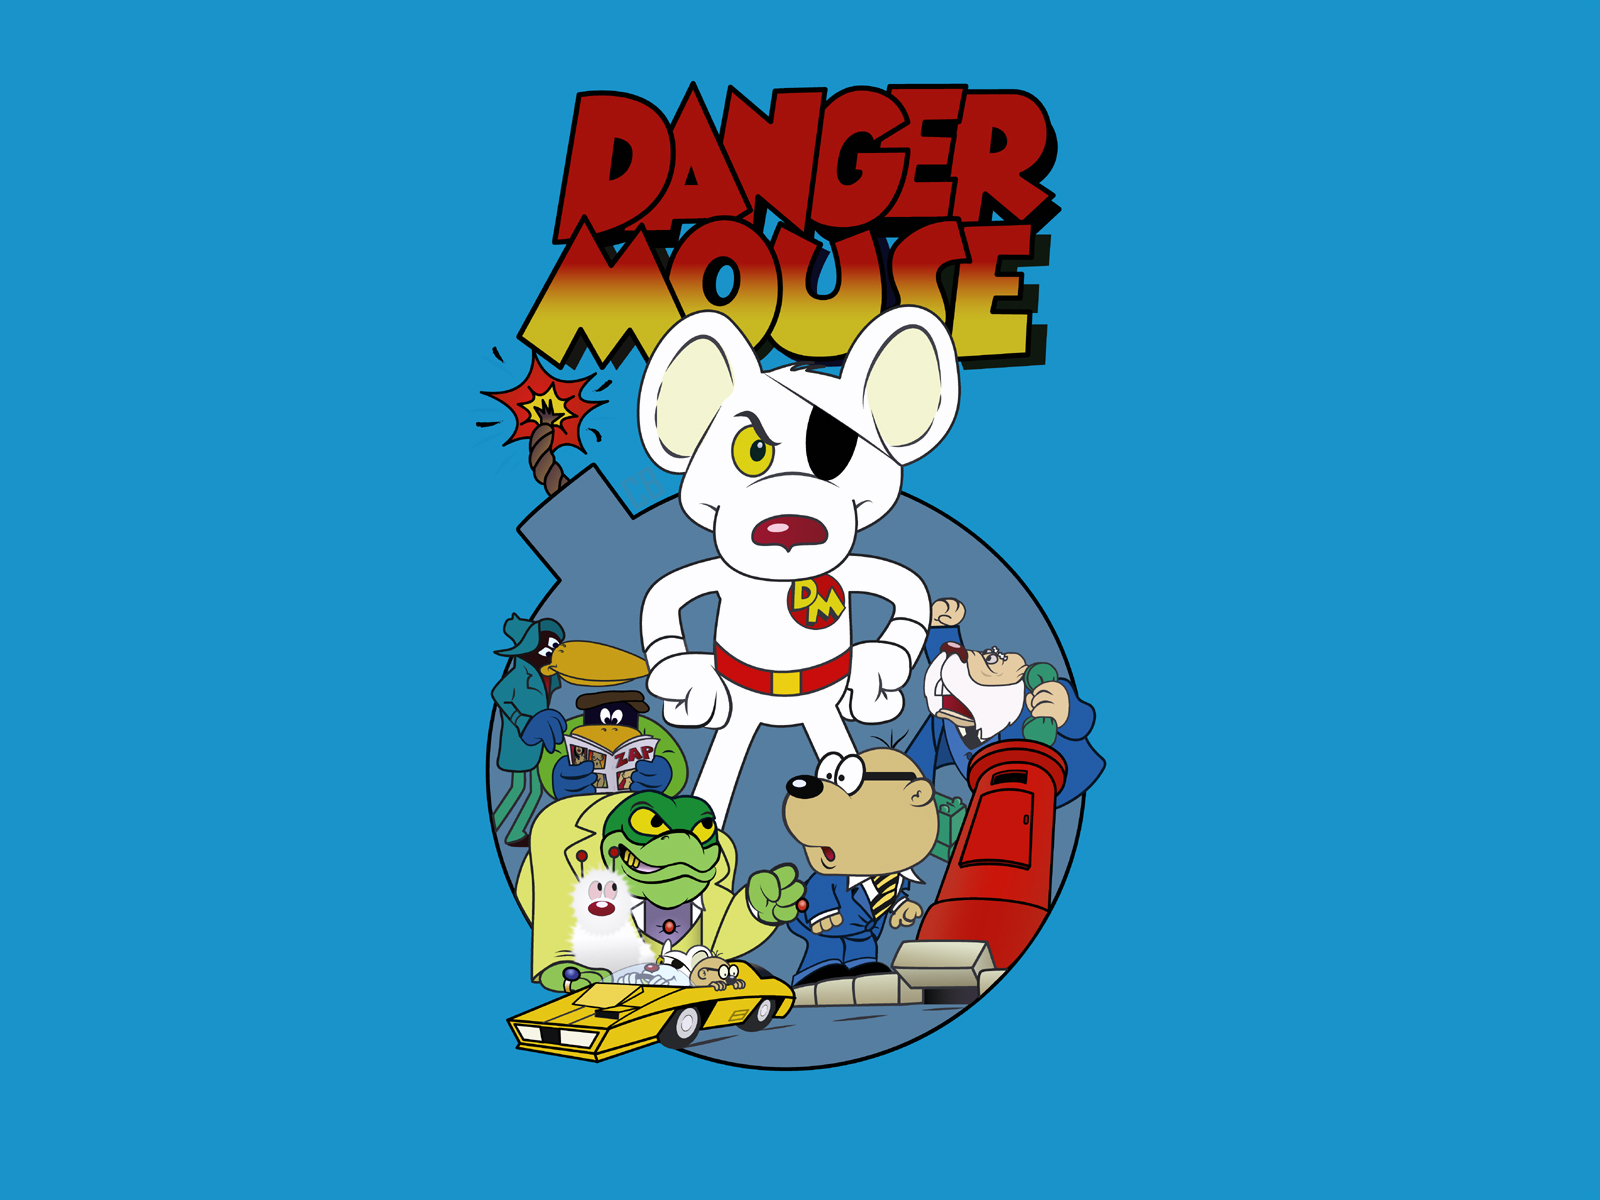 Danger-Mouse-chicken-pop-pod-2172726-1600-1200.jpg